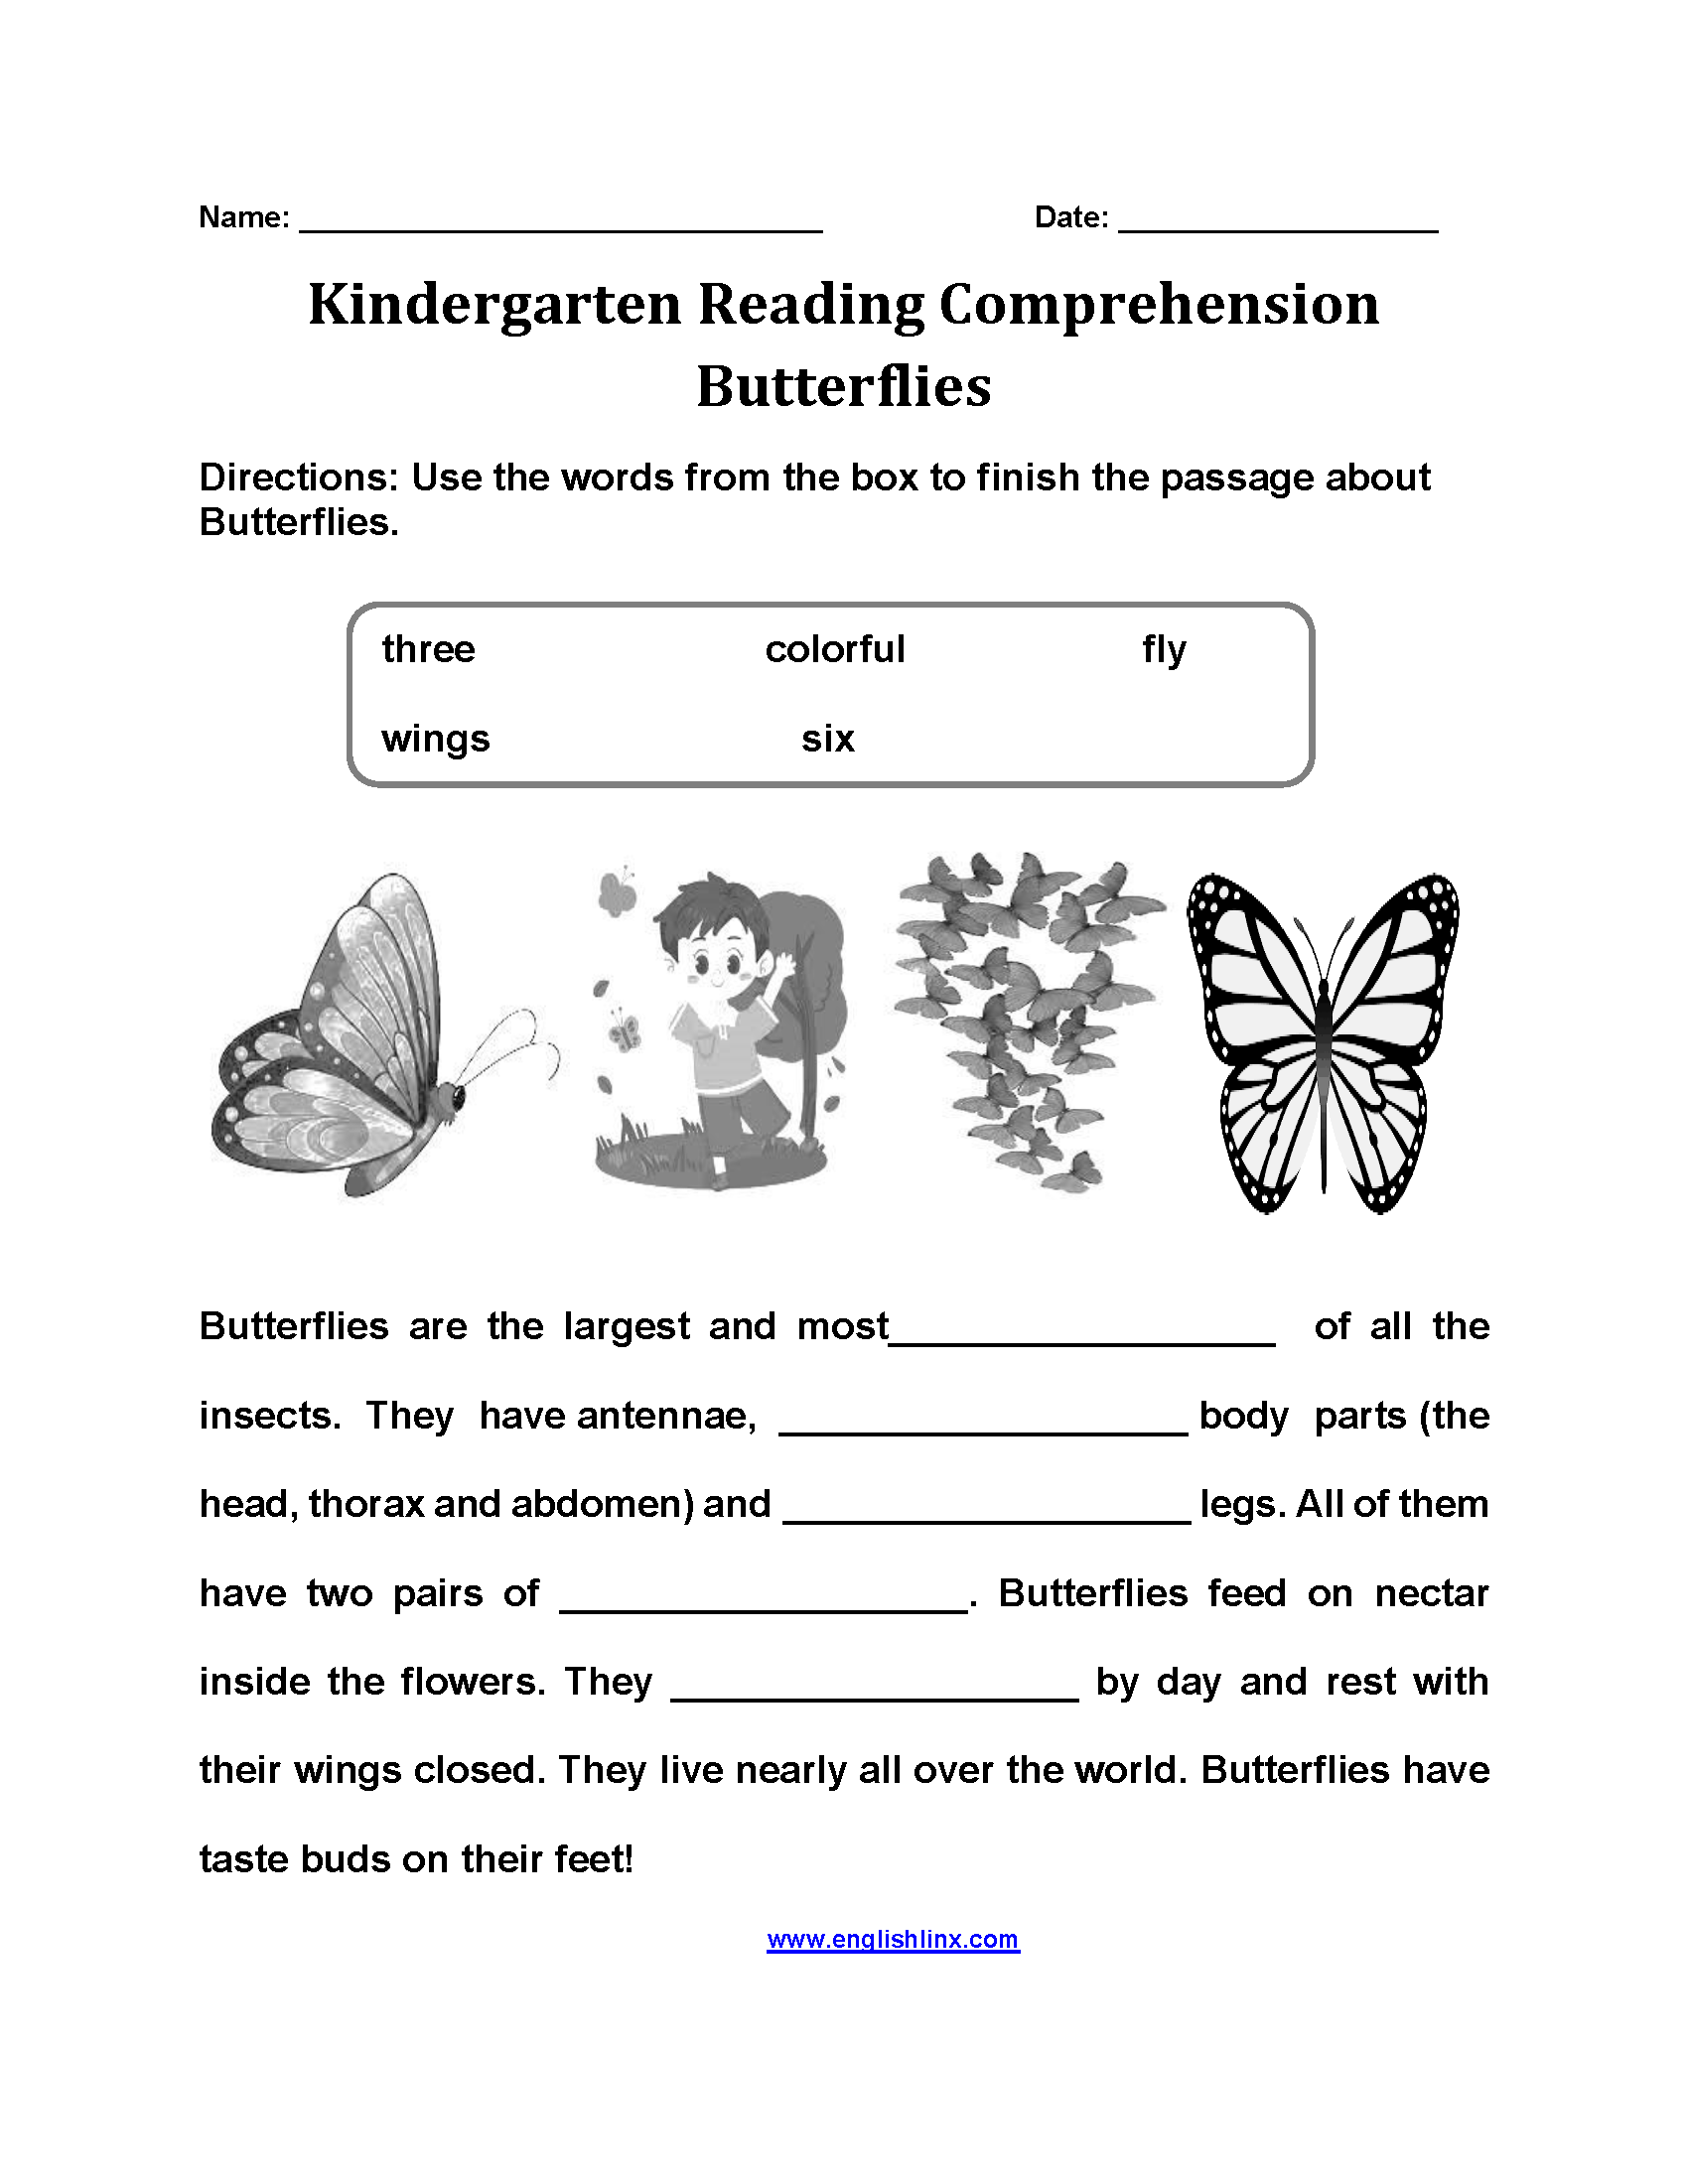 Butterflies Kindergarten Reading Comprehension Worksheets